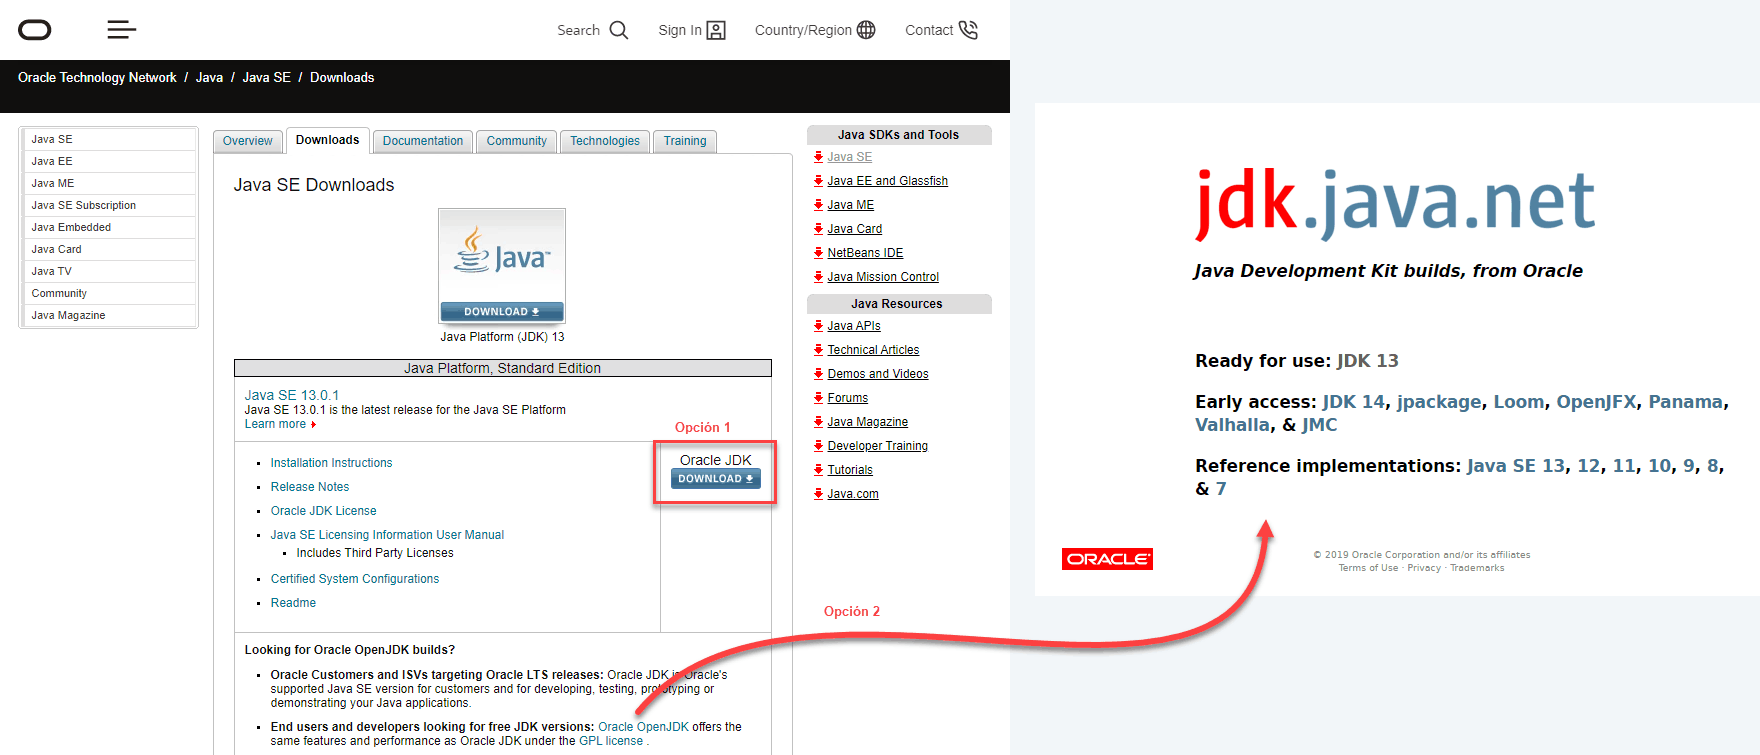 Imagen con las dos descargas posibles del JDK de Java